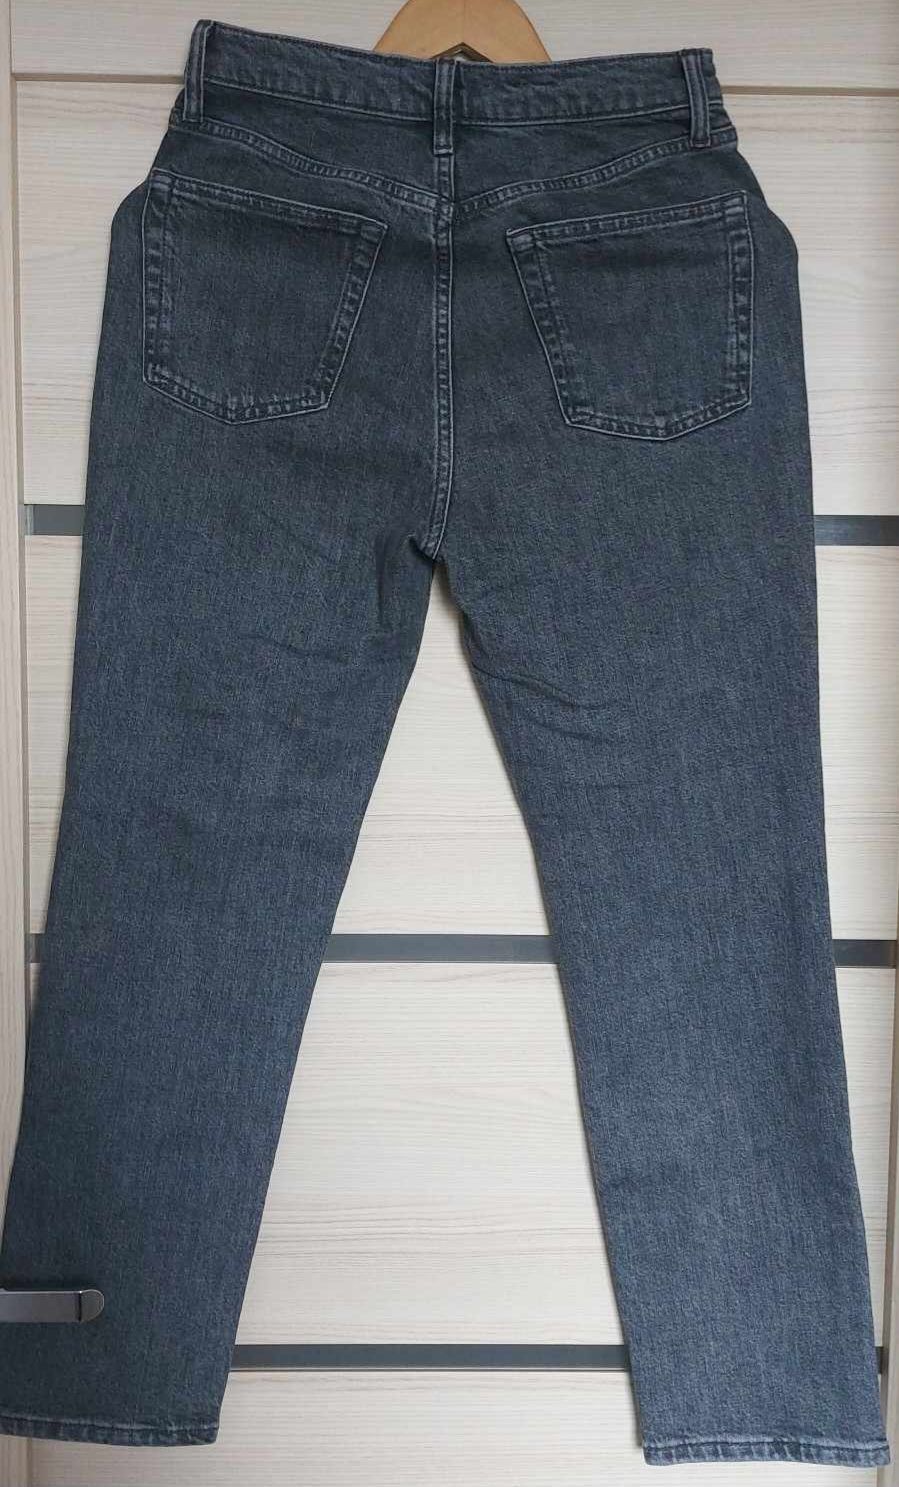 Spodnie jeansowe firmy Mango, rozm. 38